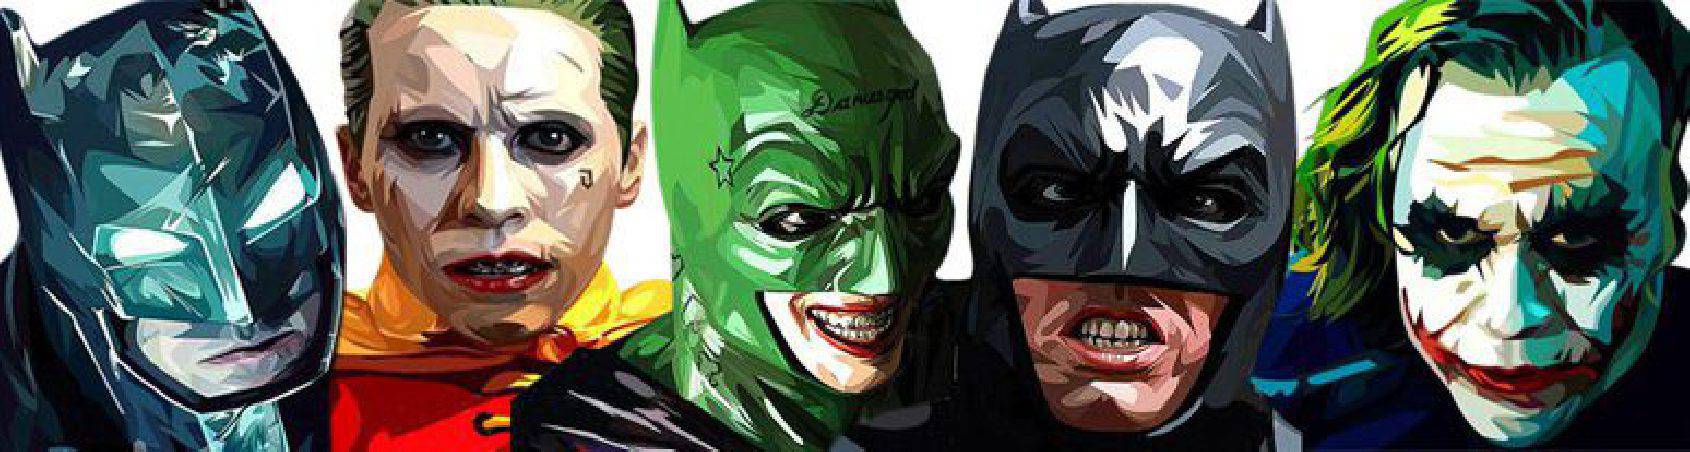 cuadros estilo PopArt-personajes DC comics-Batman & Joker-para comprar